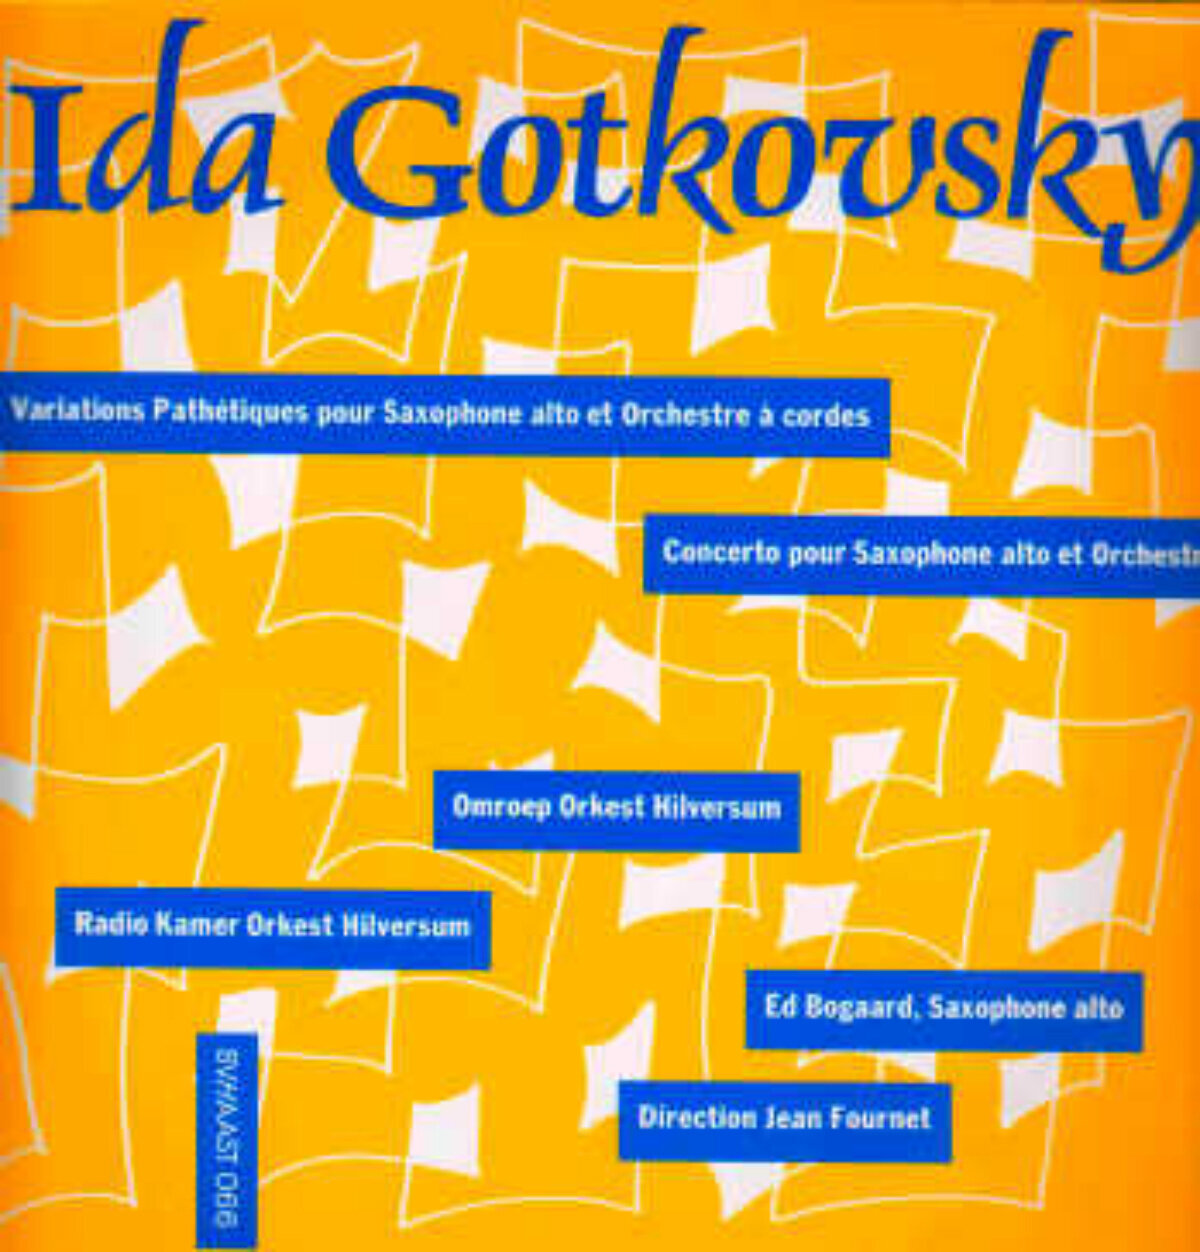 Schallplatte Ida Gotkovsky Variations Pathétiques (12'' LP)